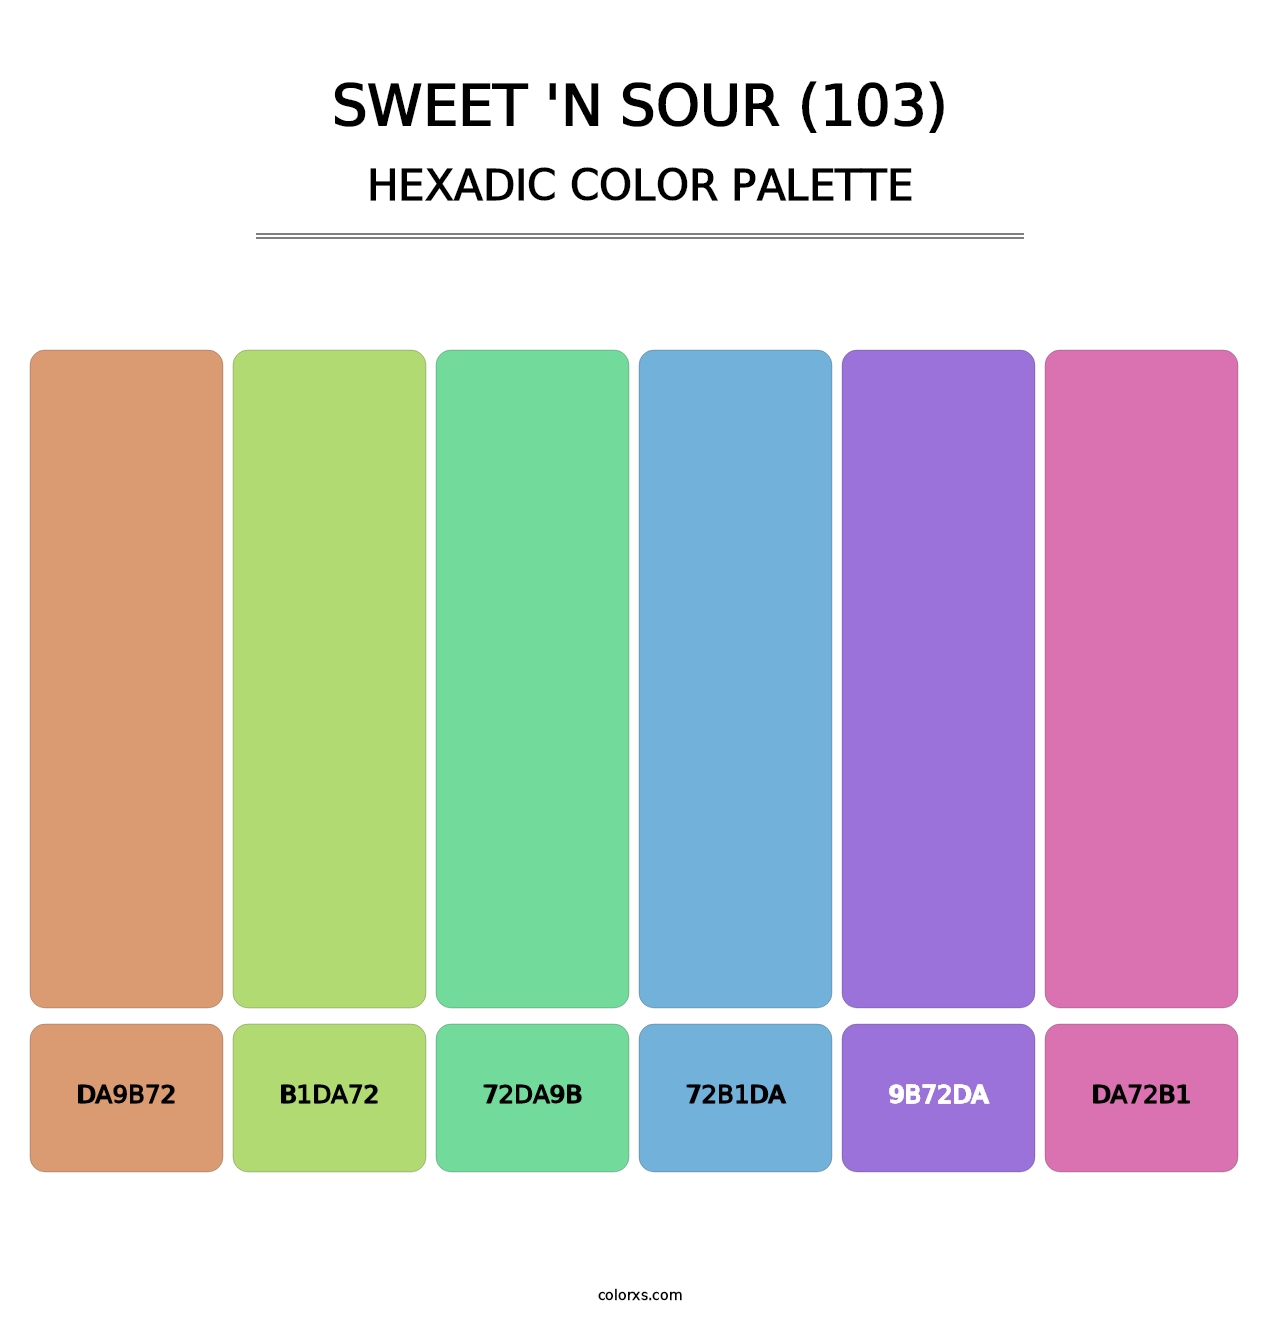 Sweet 'n Sour (103) - Hexadic Color Palette